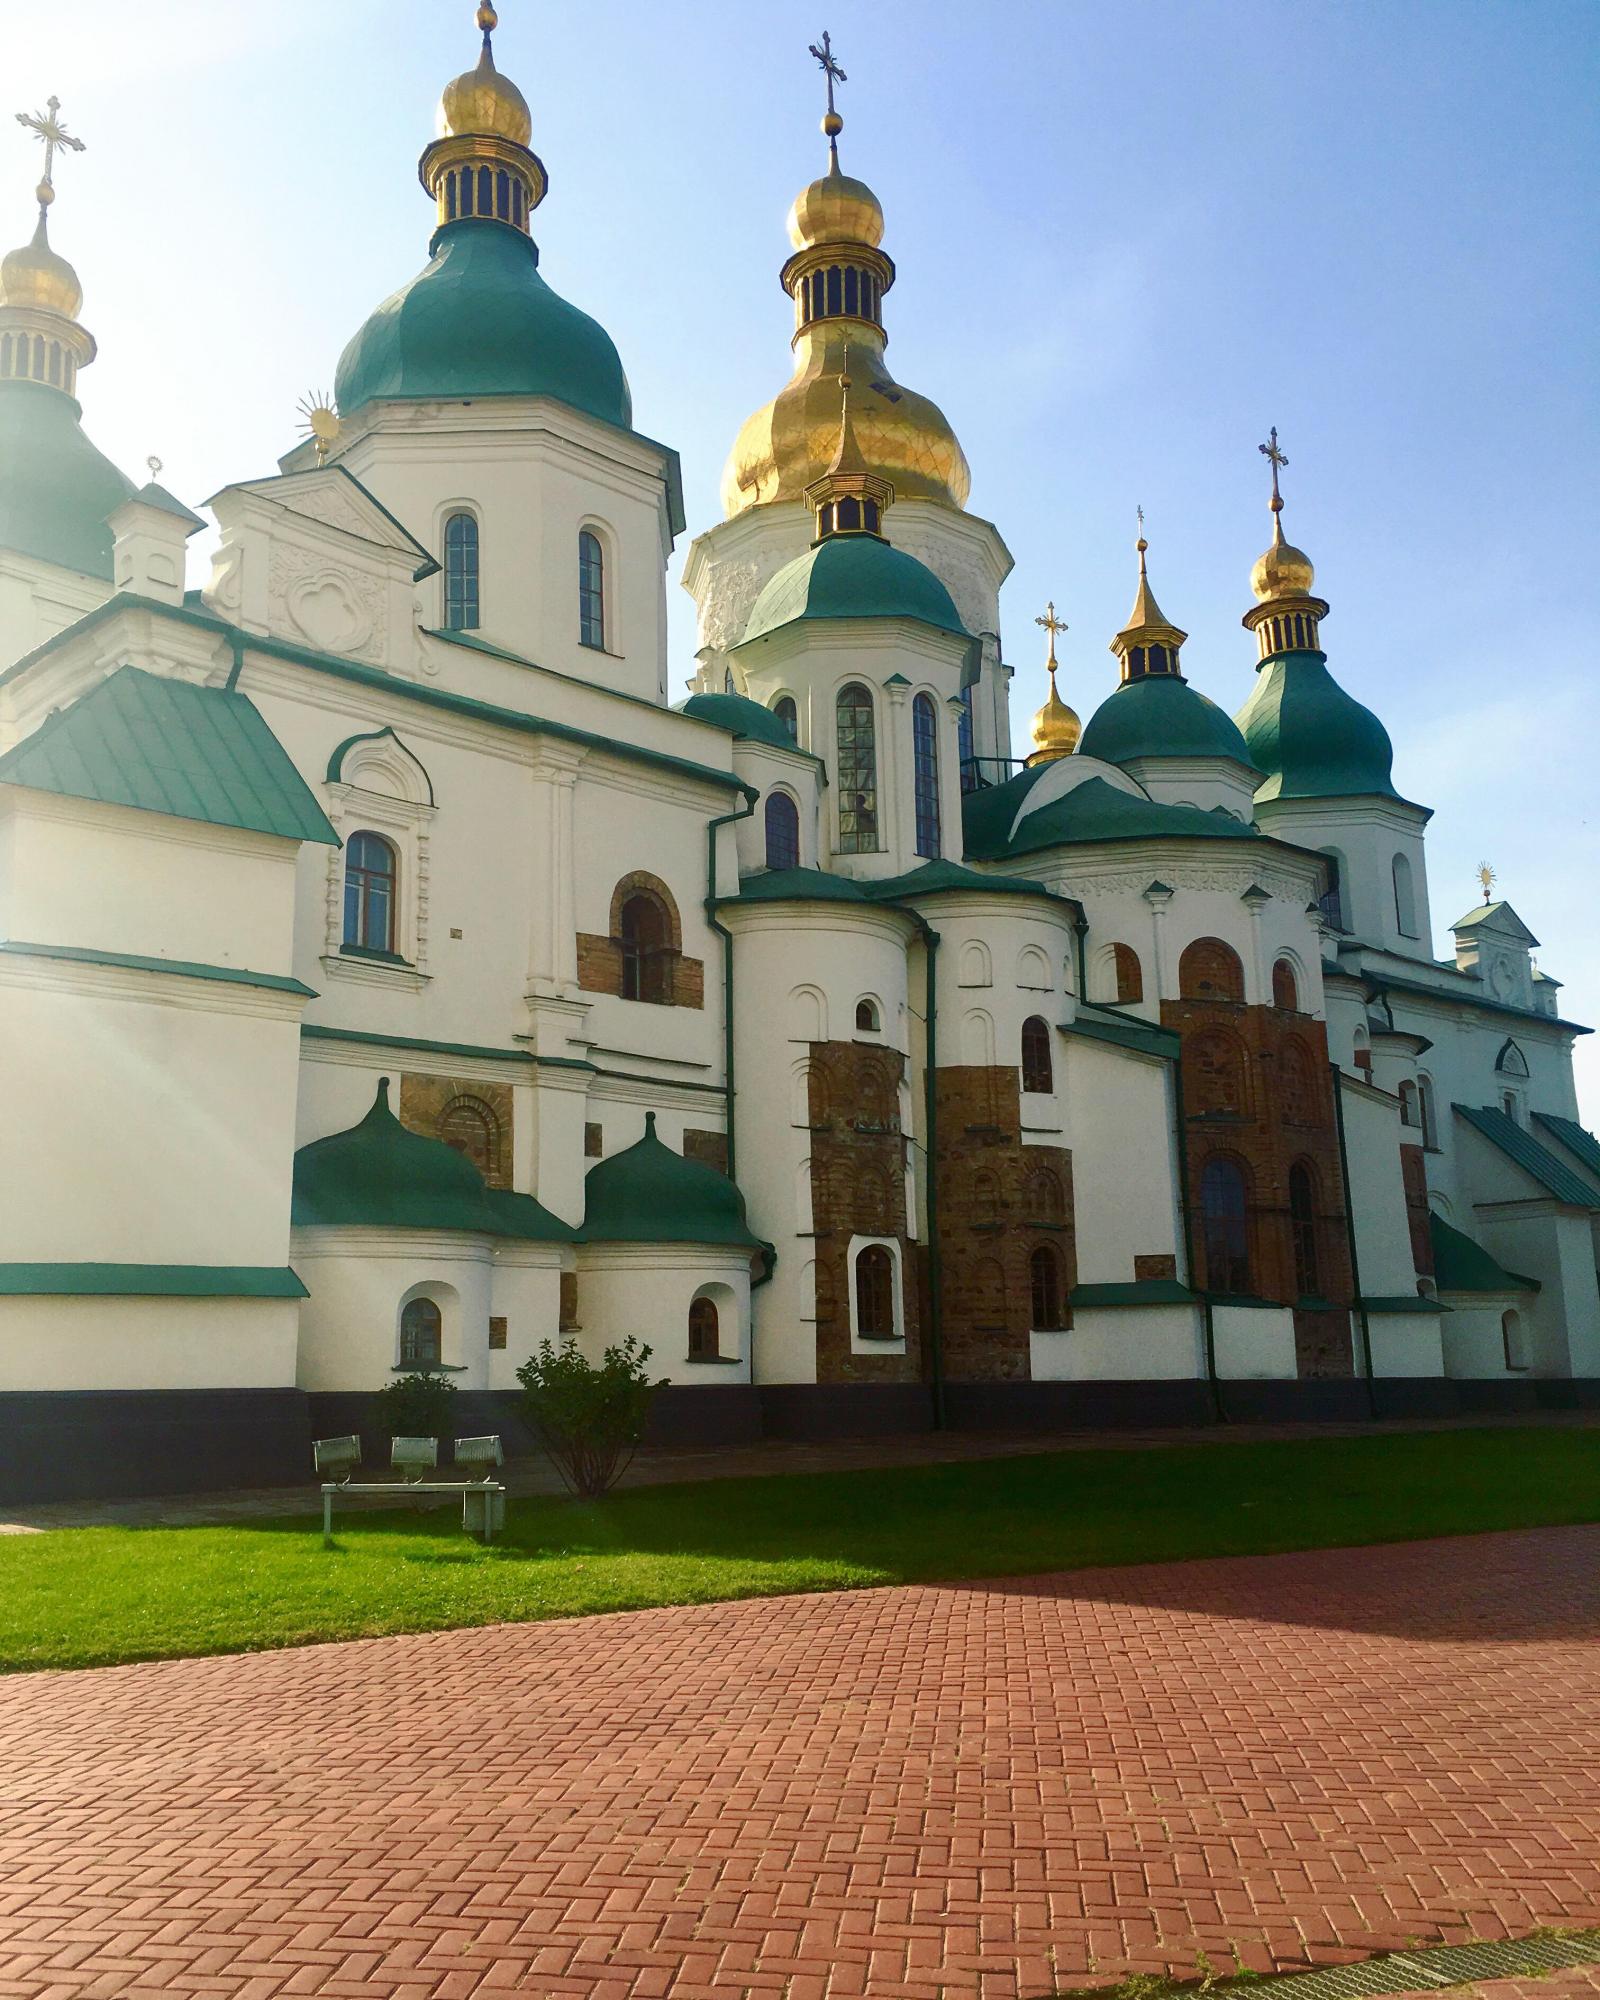 Picture of Saint Sophia Cathedral in Kiev, Ukraine